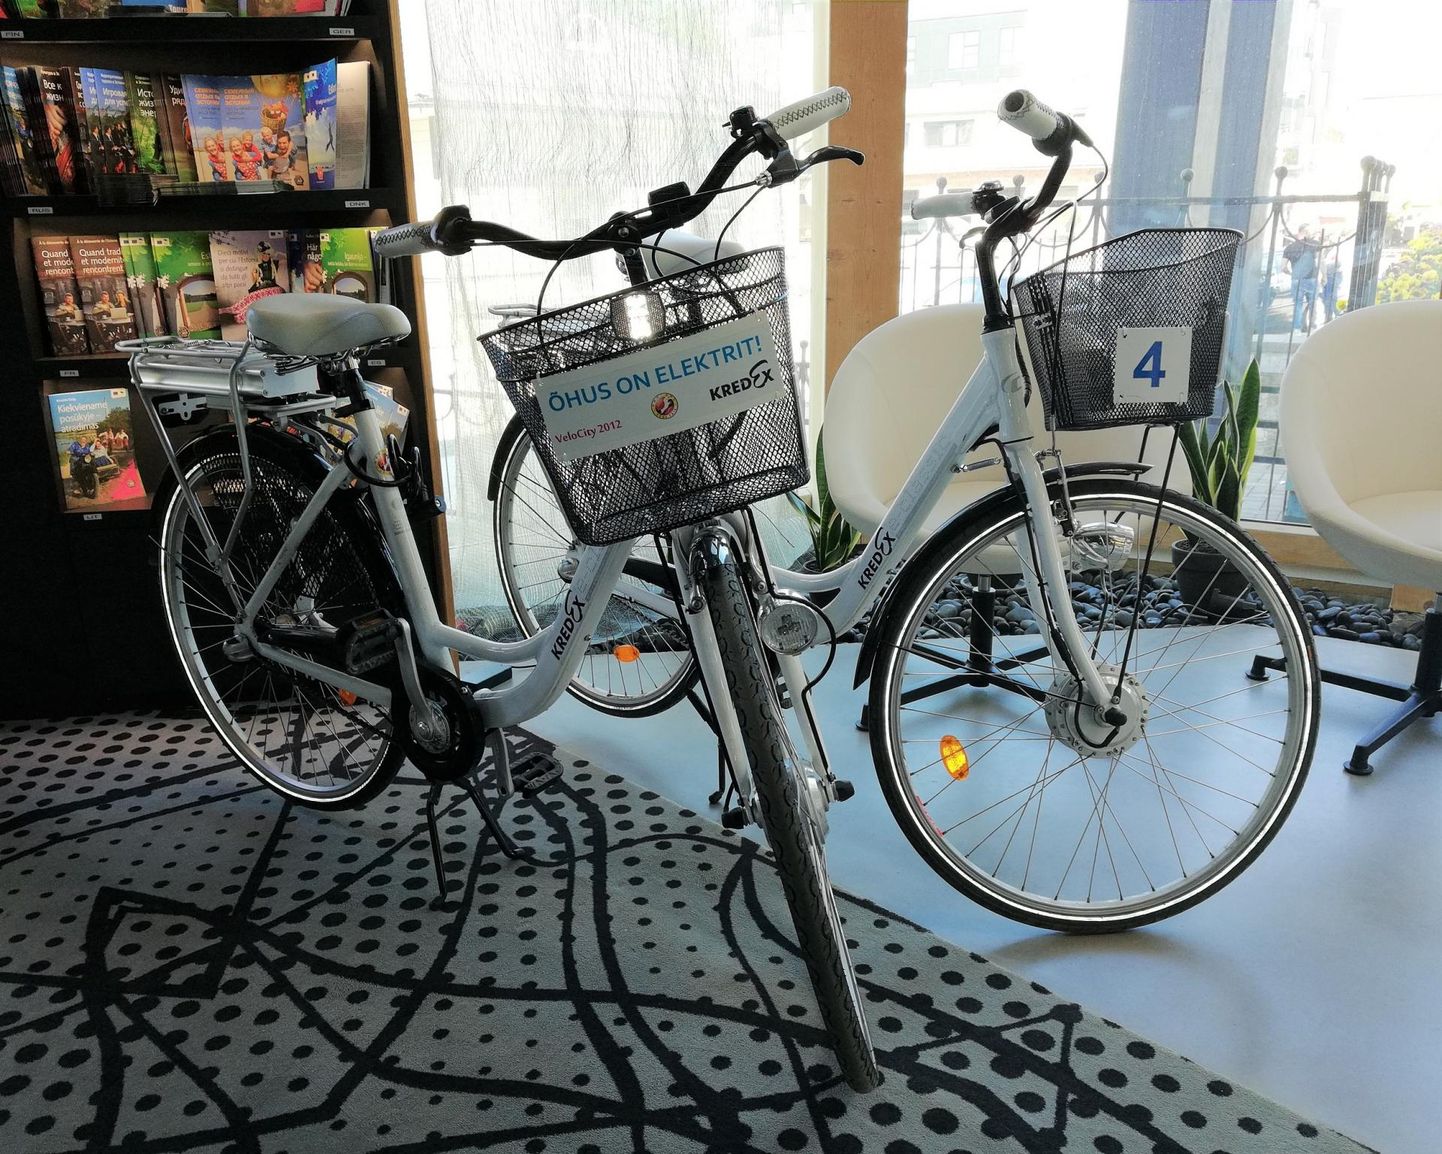 Elektrijalgratast saab Rakvere turismiinfopunktist tasuta laenutada.